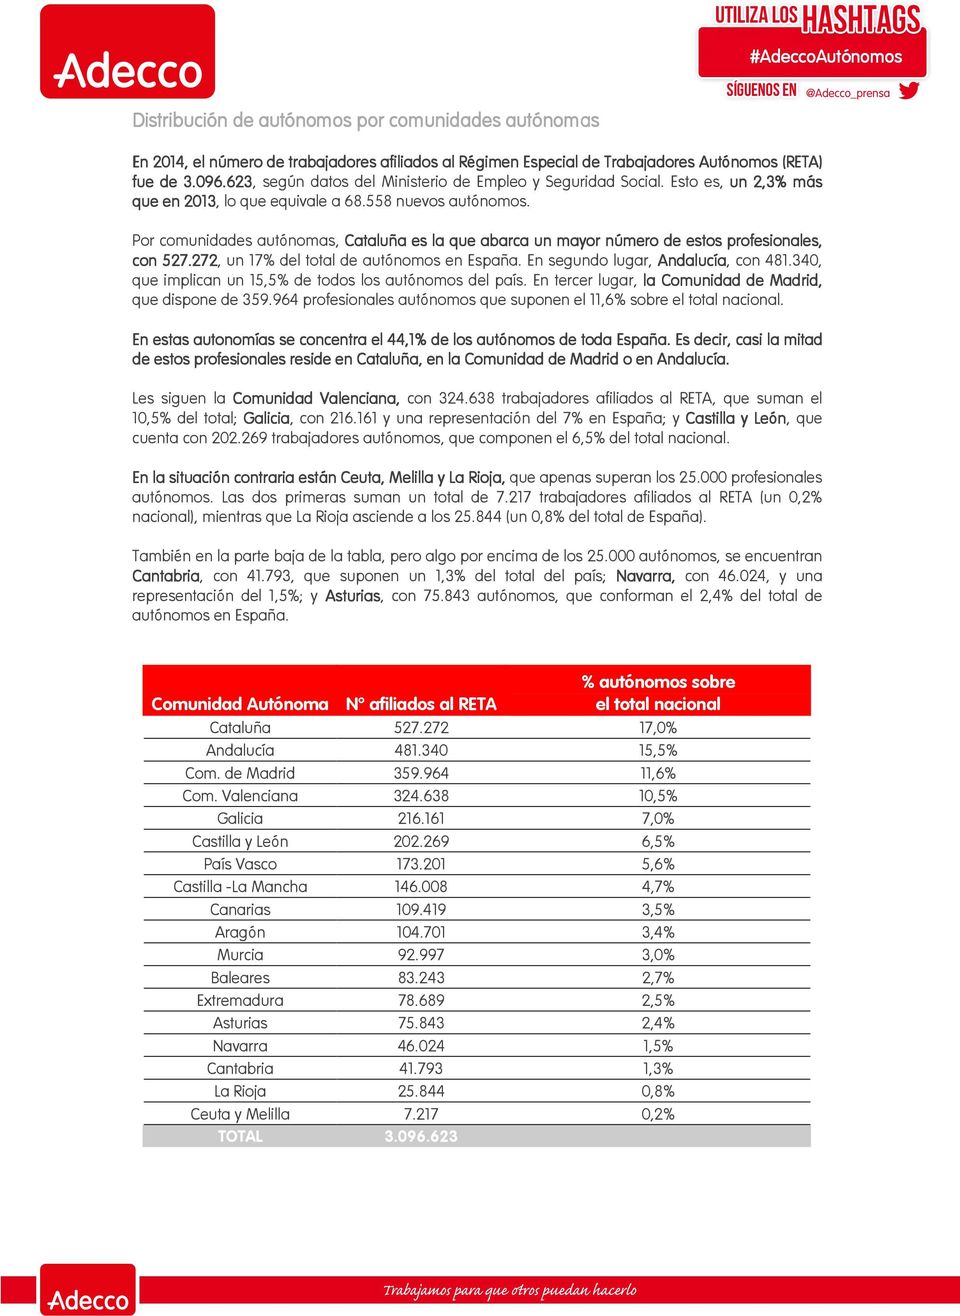 Por comunidades autónomas, Cataluña es la que abarca un mayor número de estos profesionales, onales, con 527. 7.272 272, un 17% del total de autónomos en España. En segundo lugar, Andalucía, con 481.